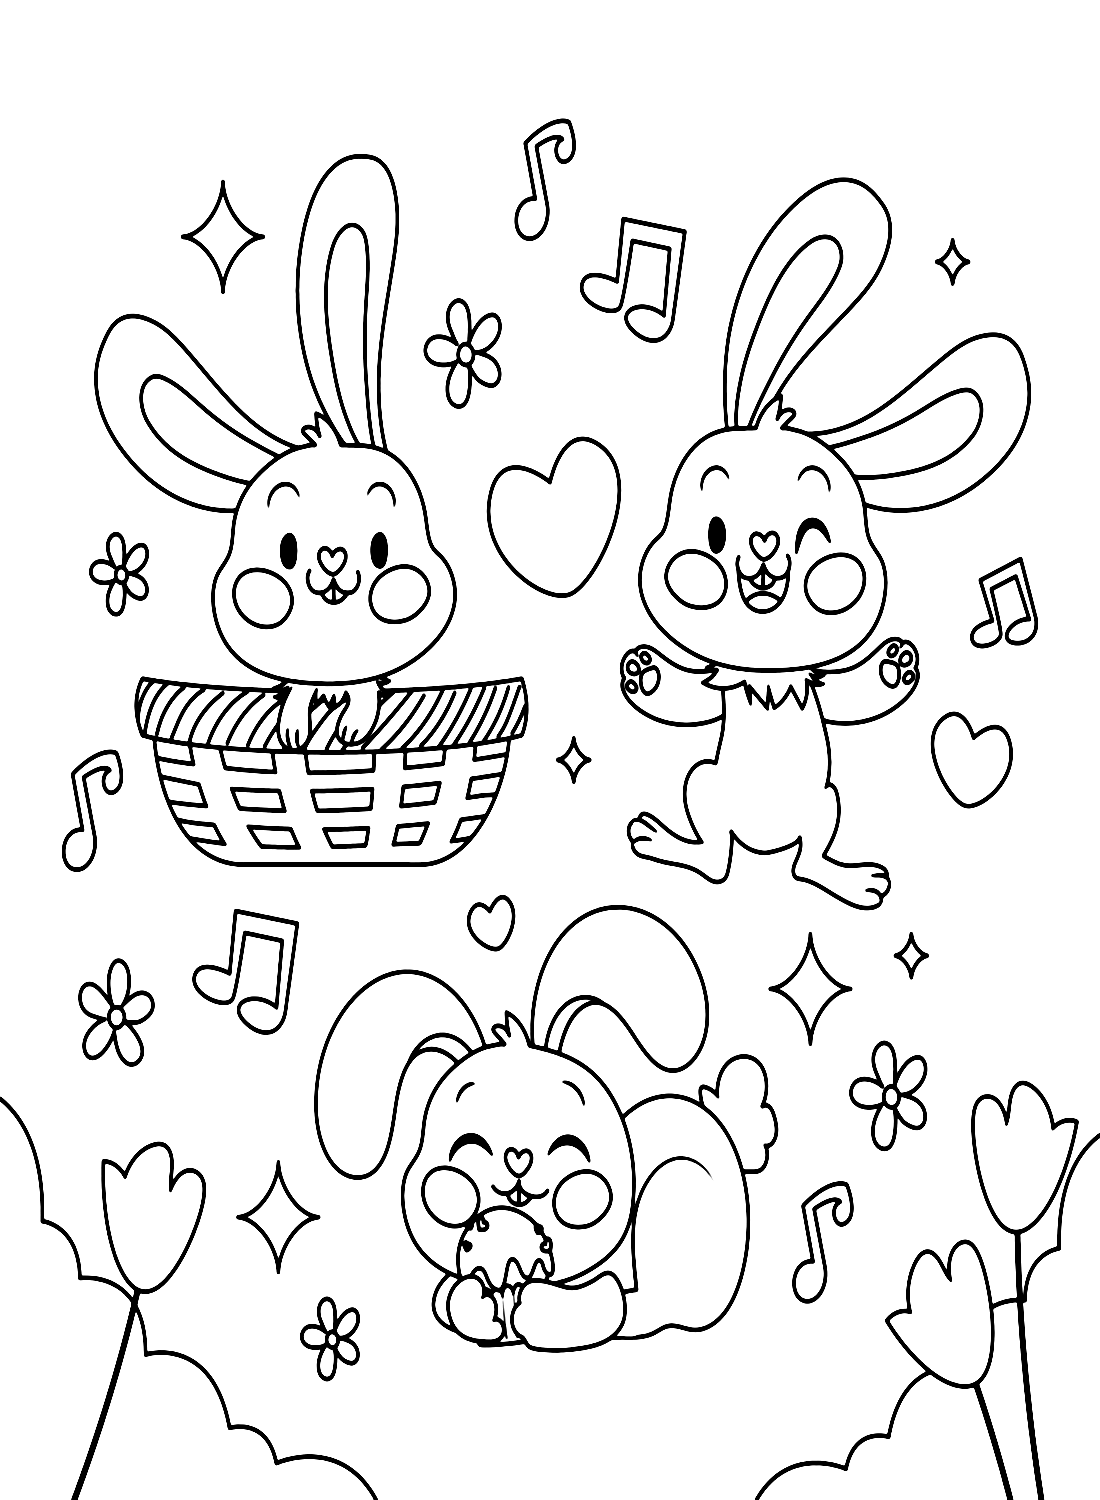 Trois lapins appréciant la musique de Rabbit